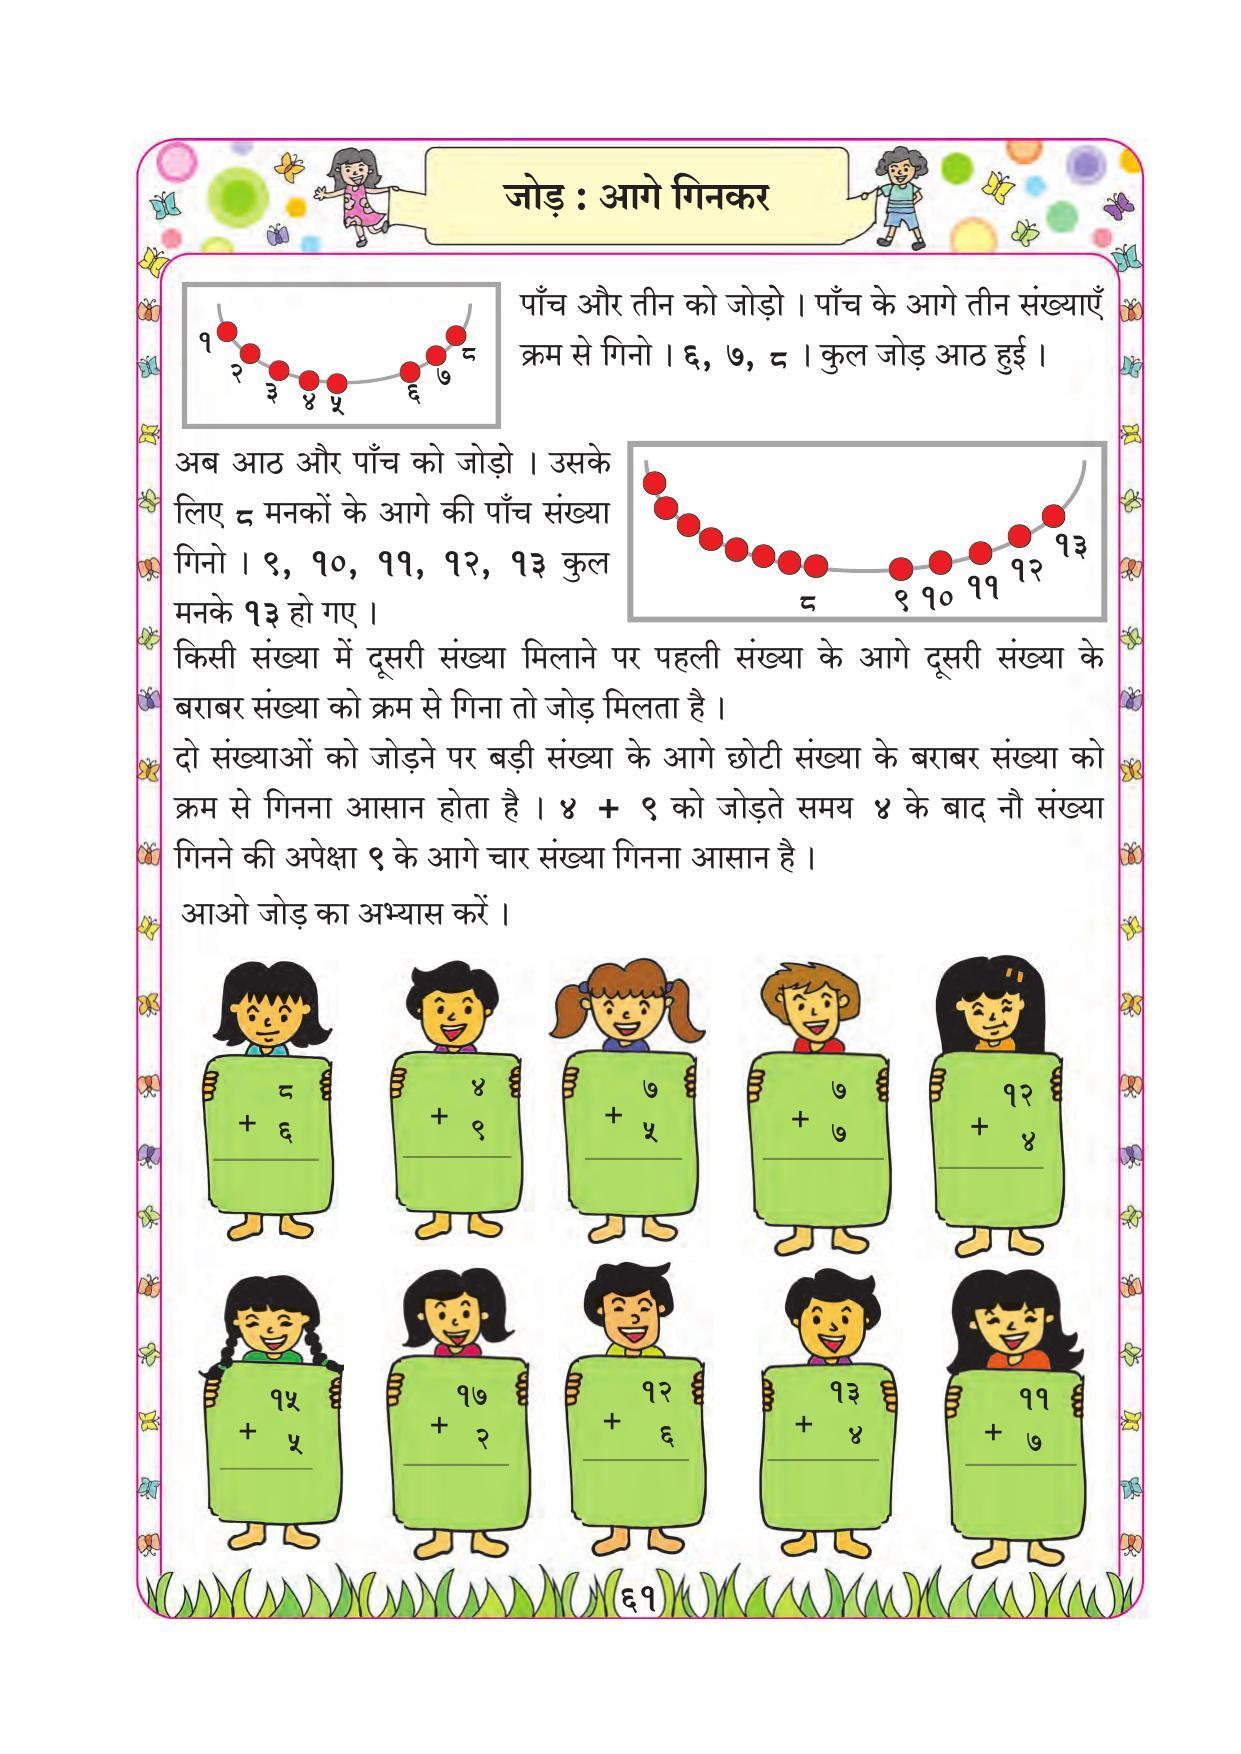 Maharashtra Board Class 1 Maths (Hindi Medium) Textbook - Page 71